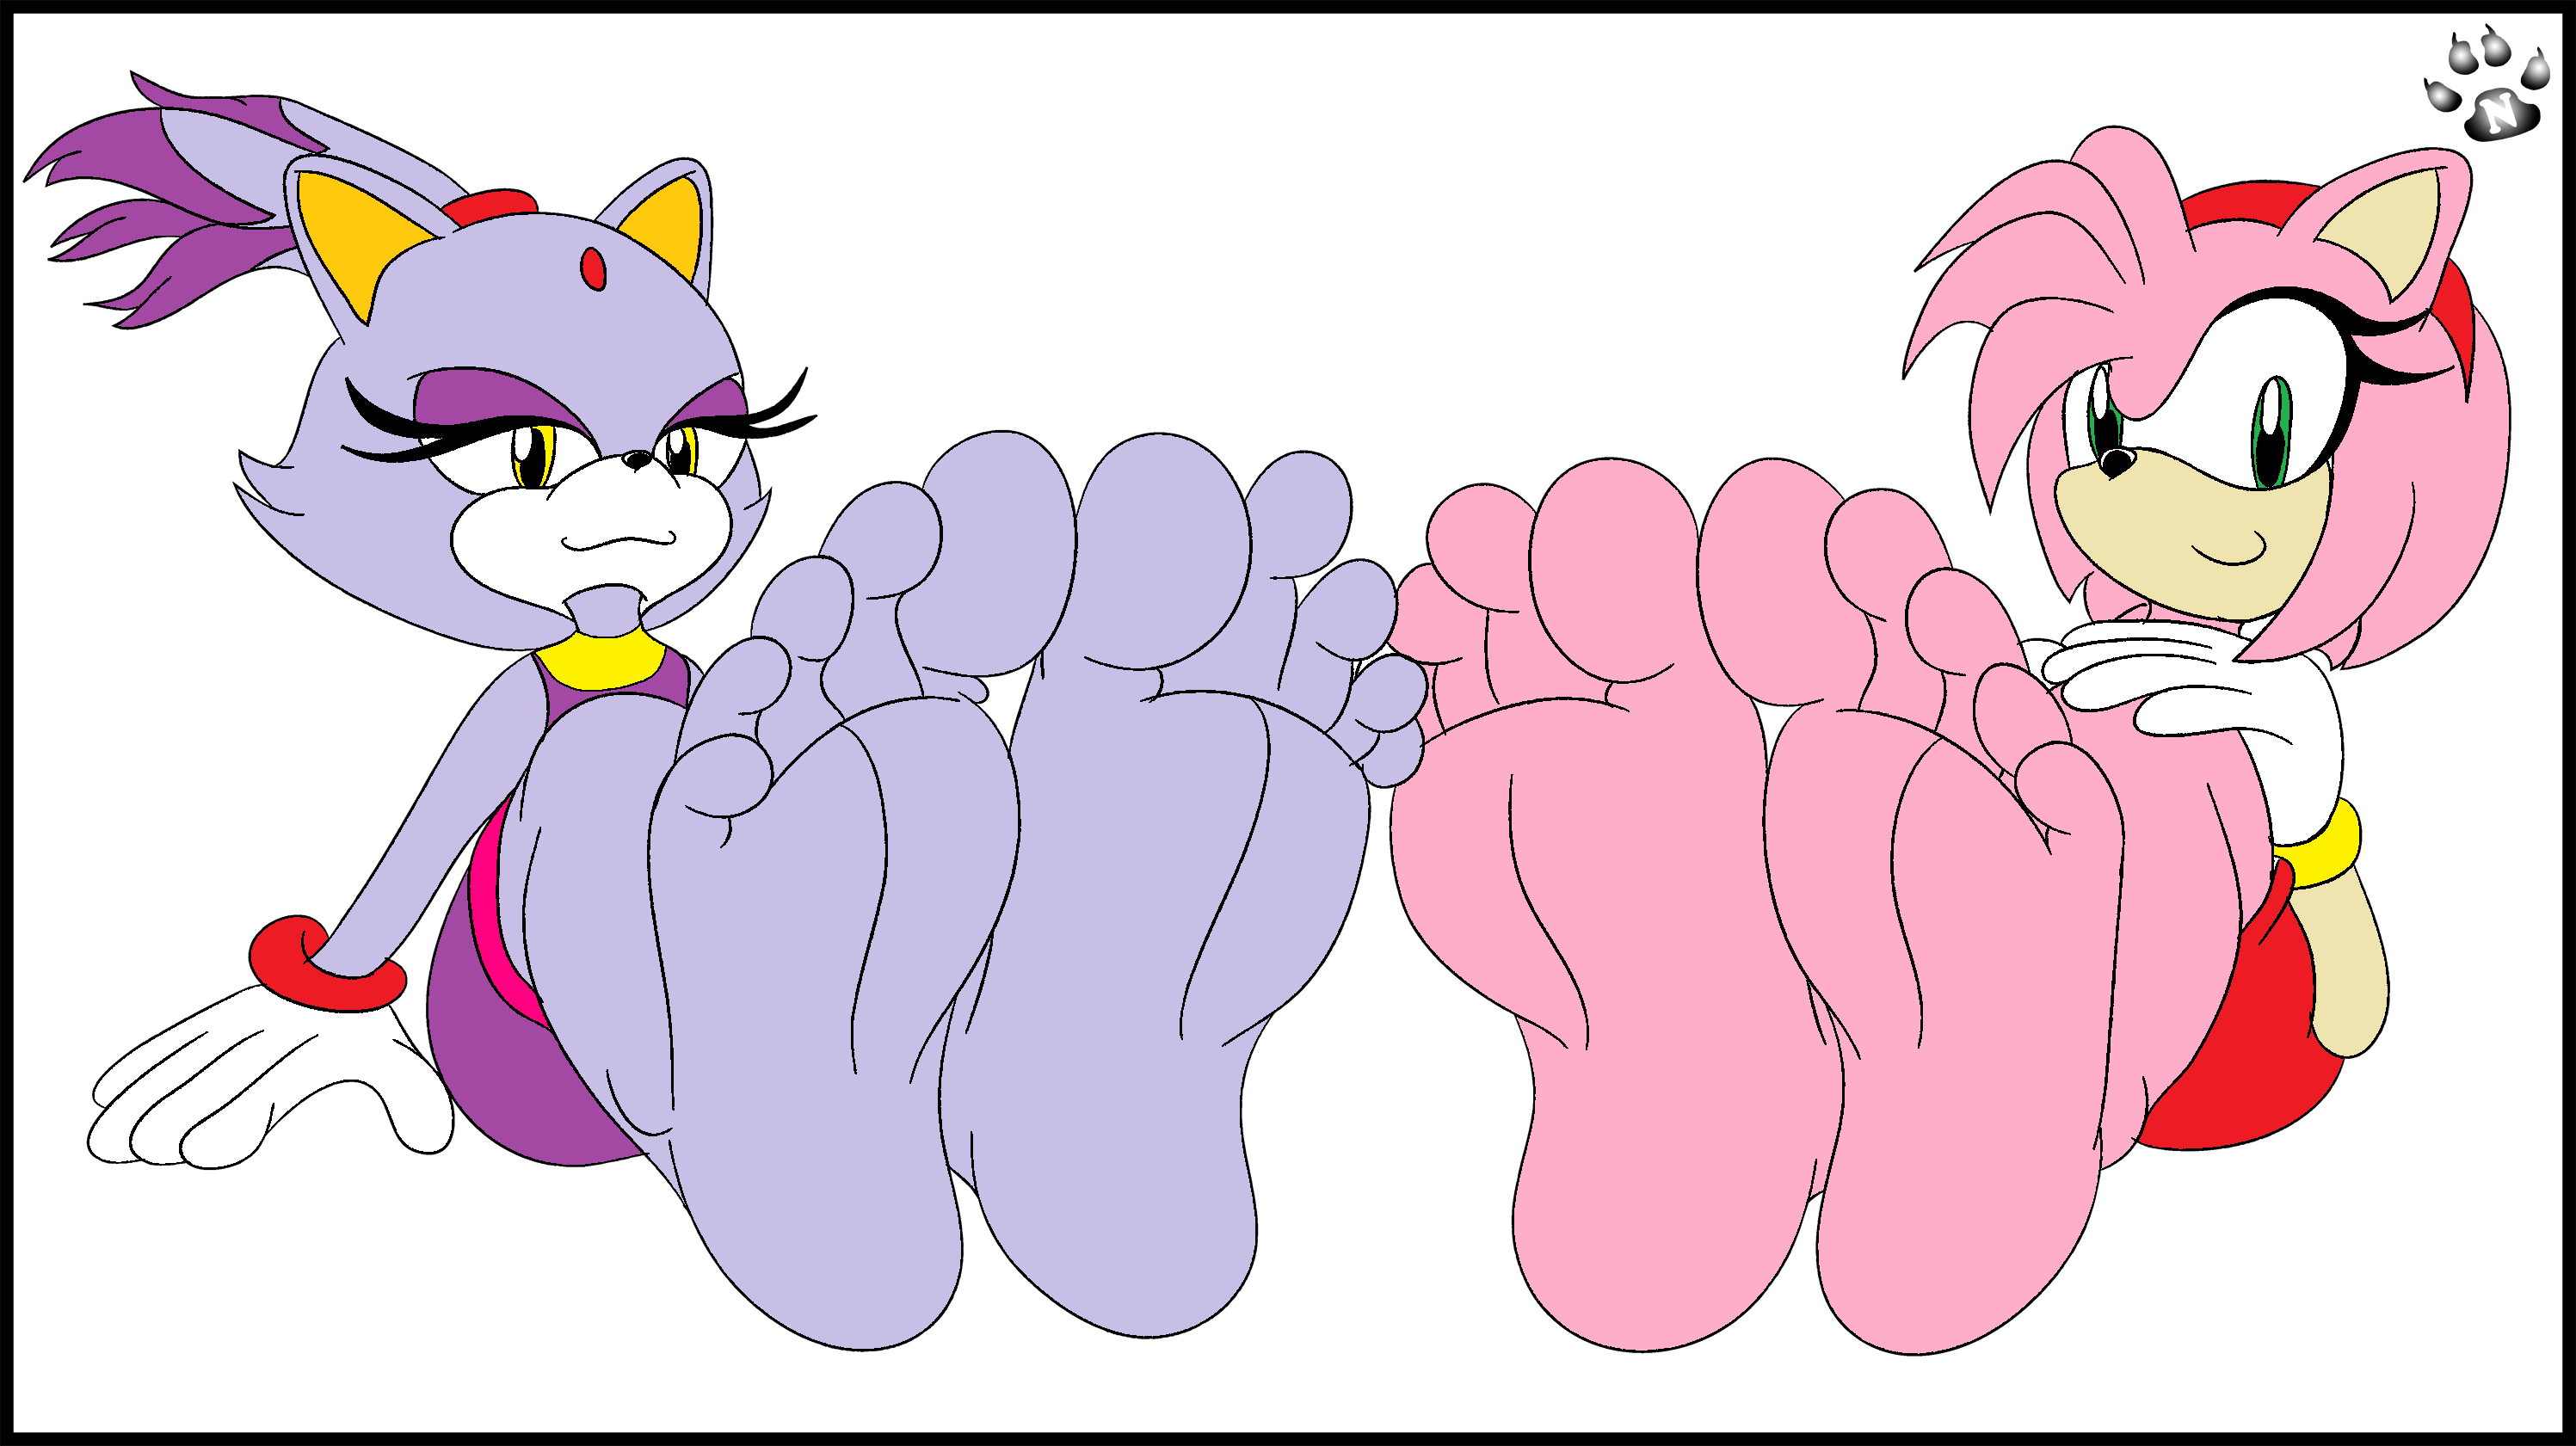 Amy and Blaze's Teasing Feet. 